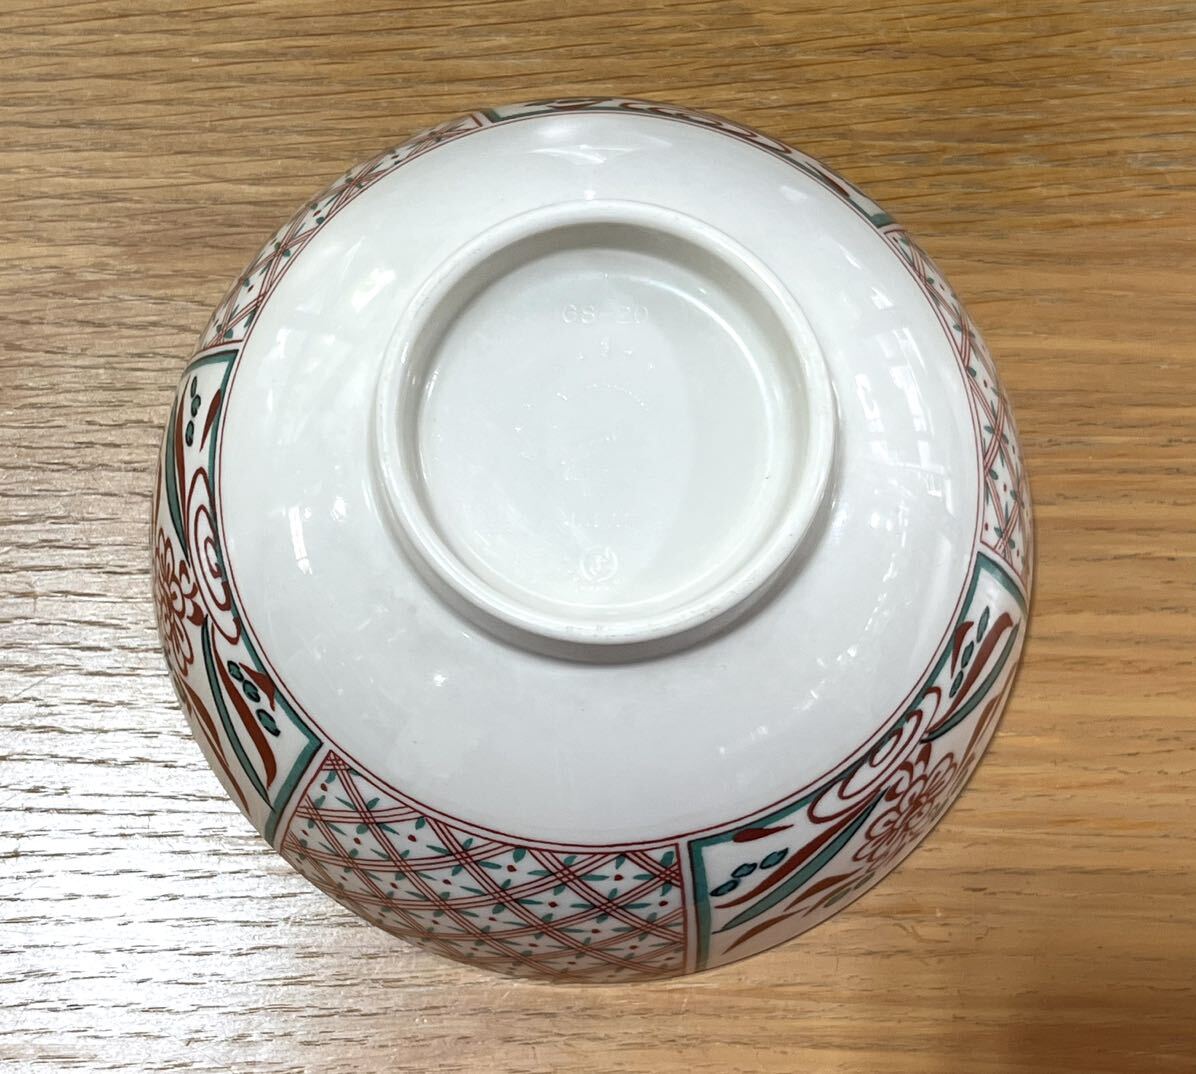 [Three Linemelamin посуда 15 шт. комплект ] вид фарфоровая пиала GR-20 150×150×80mm Yamato пластик сделано в Японии объект еда . средний фарфоровая пиала еда и напитки магазин для бизнеса для бытового использования 